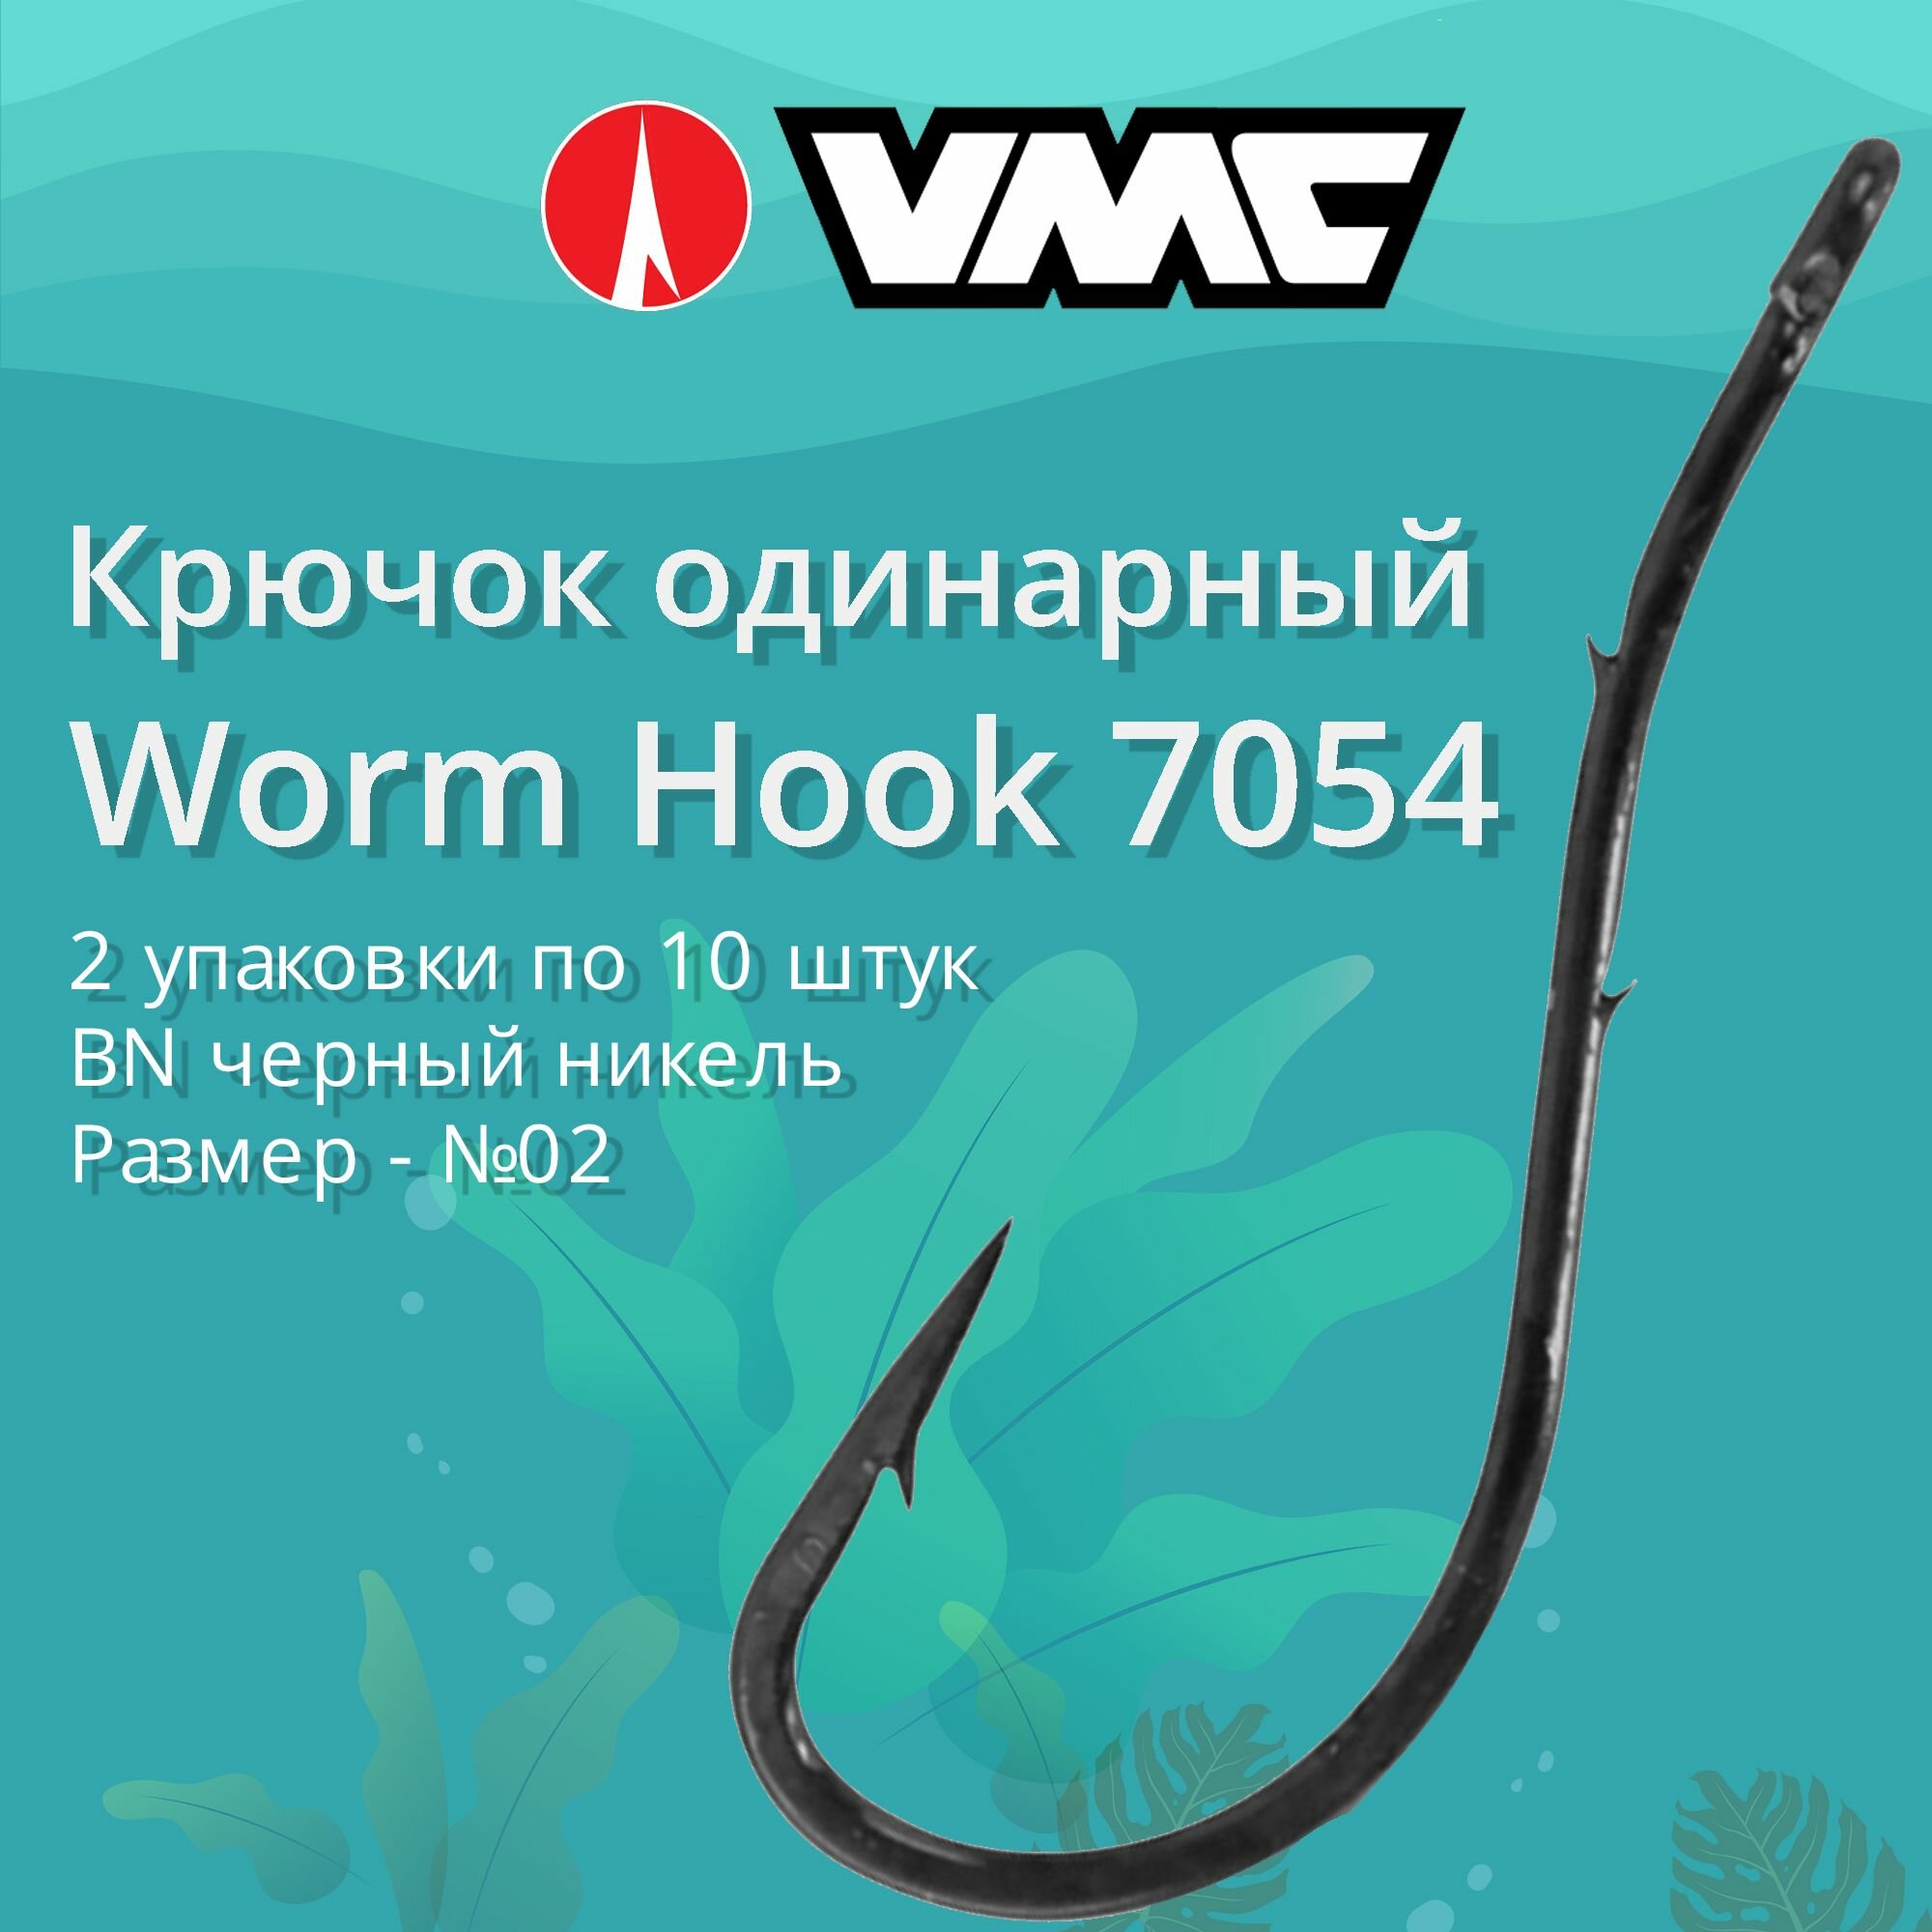 Крючки для рыбалки (одинарный) VMC Worm Hook 7054 BN (черн. никель) №02 2 упаковки по 10 штук